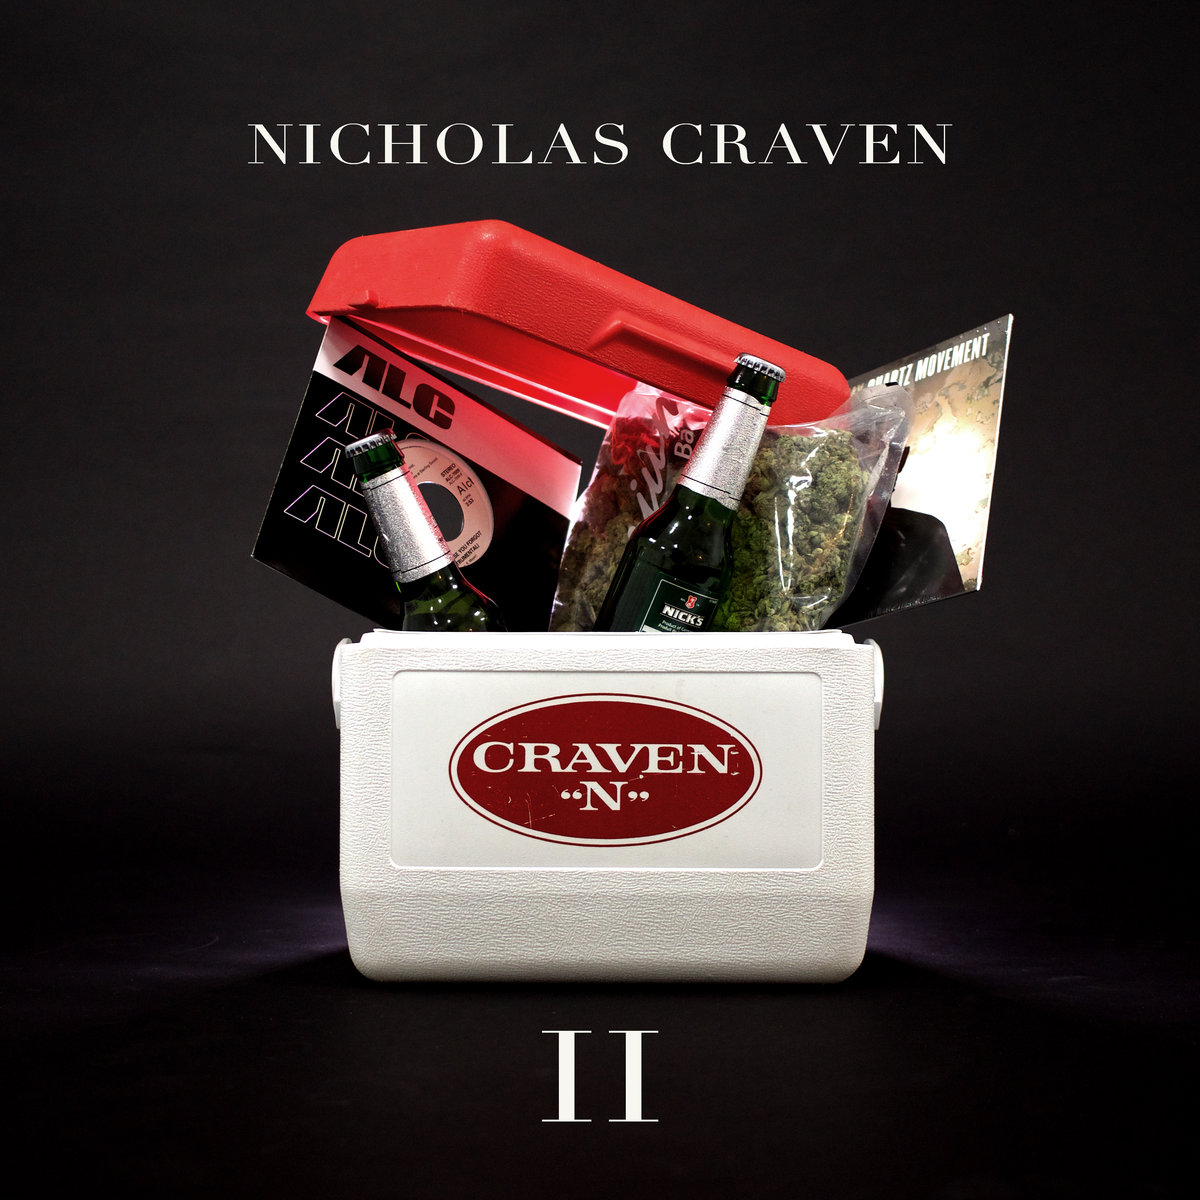 Craven_n_2_nicholas_craven